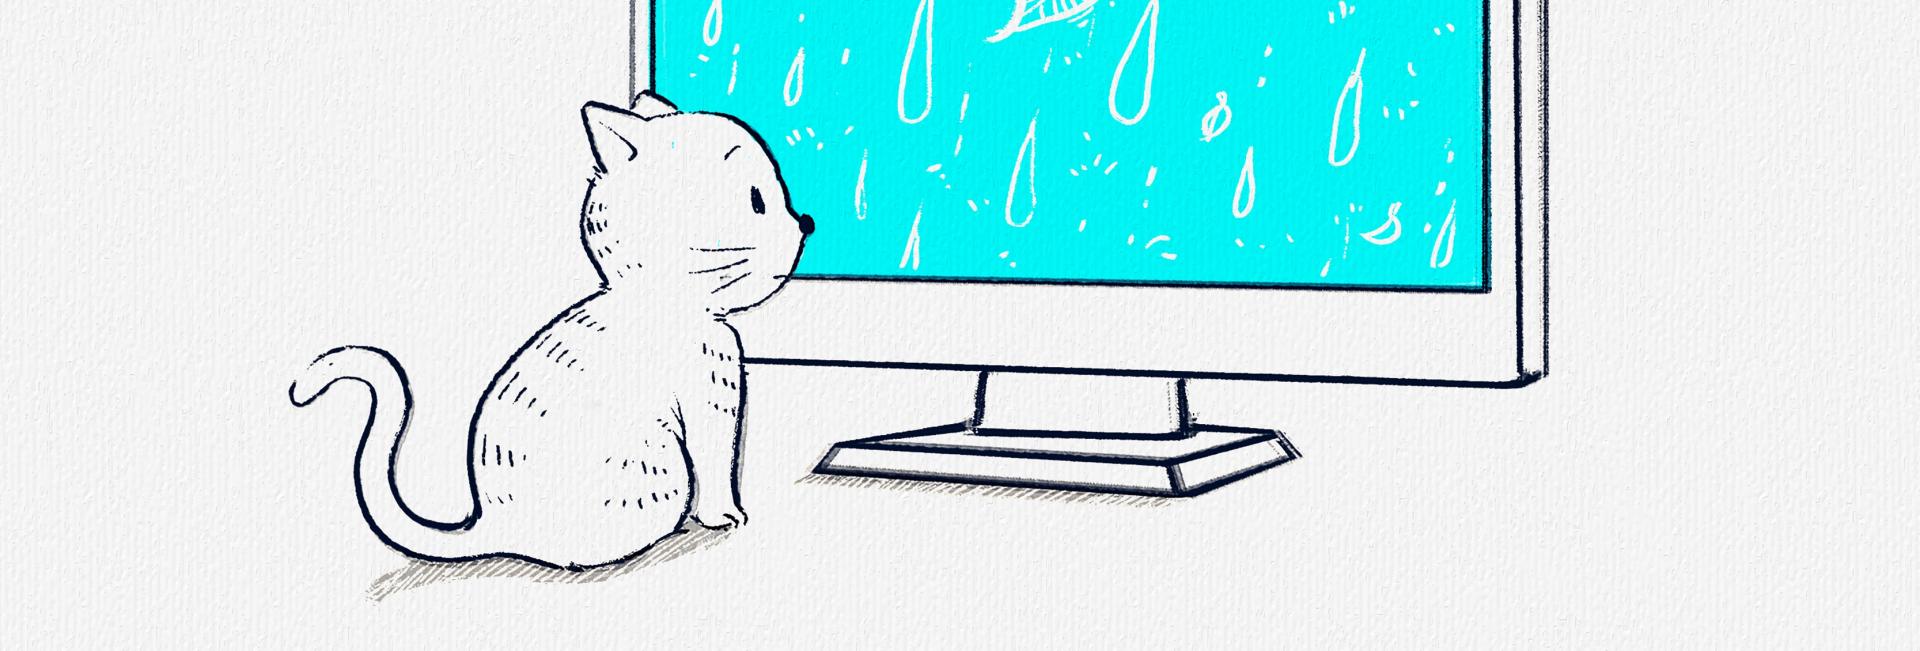 gato mira la lluvia a través de la pantalla